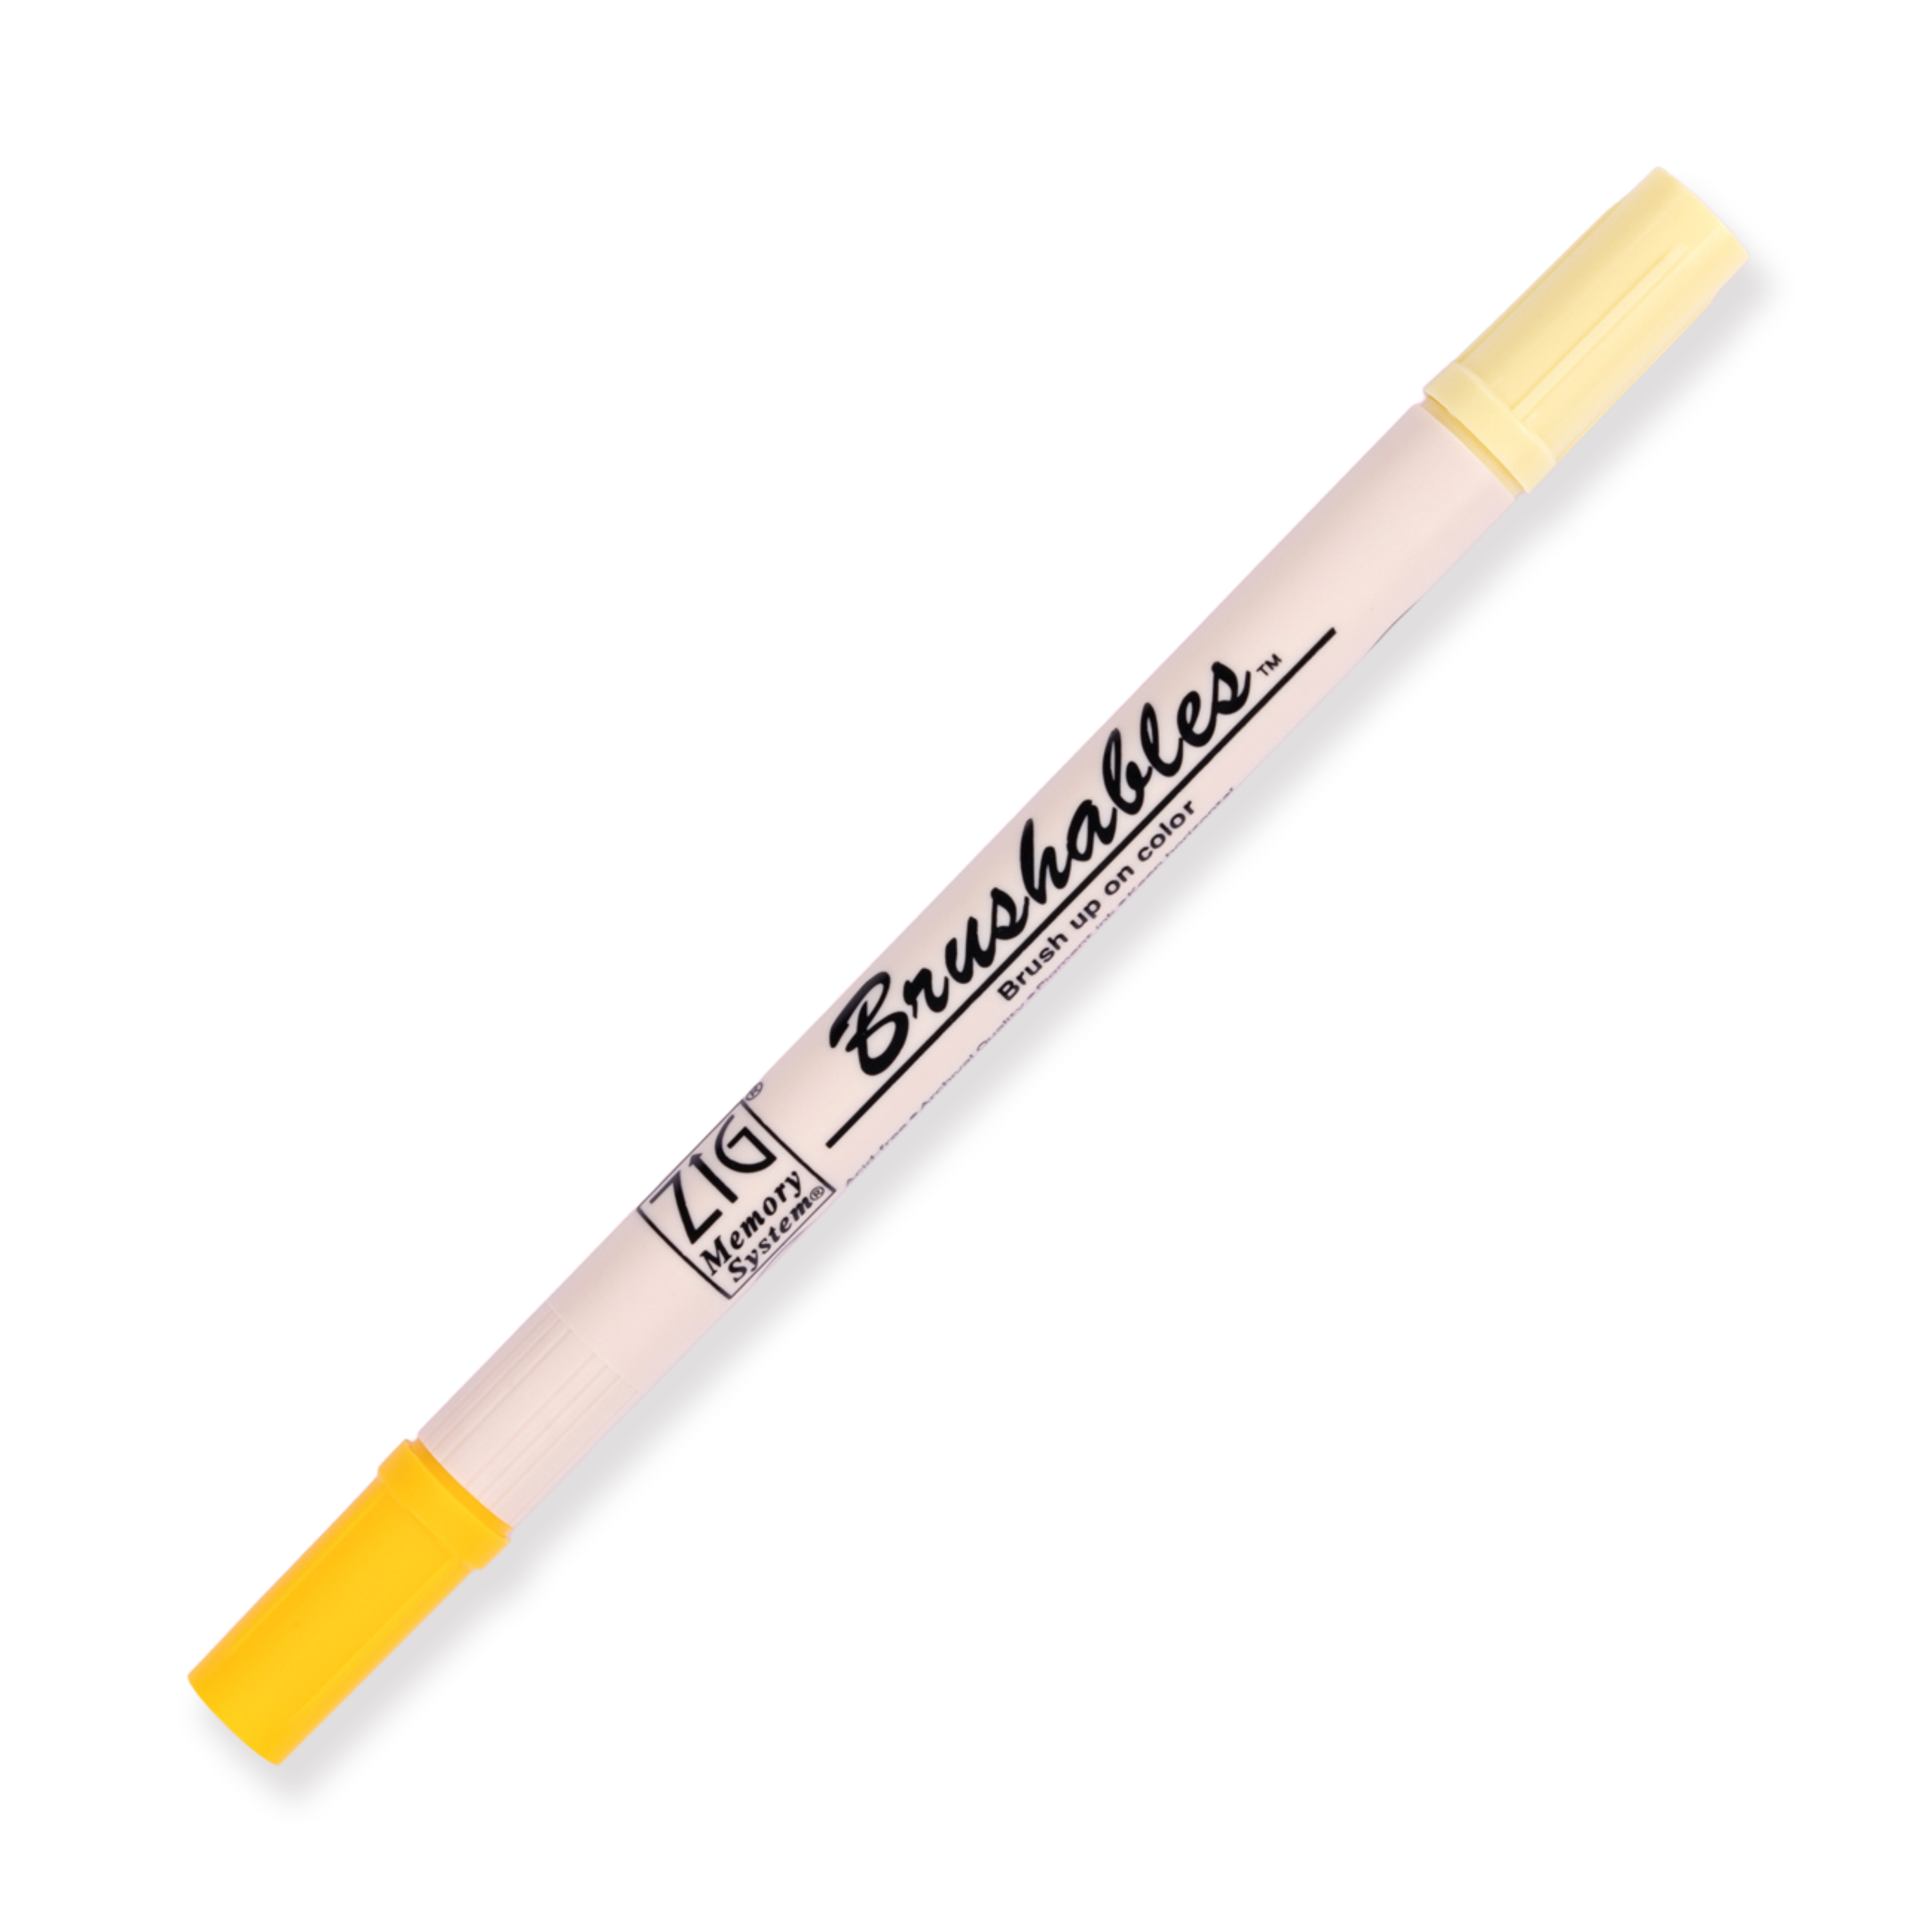 Kuretake Zig Brushables Pinselstift - Pure Yellow 050